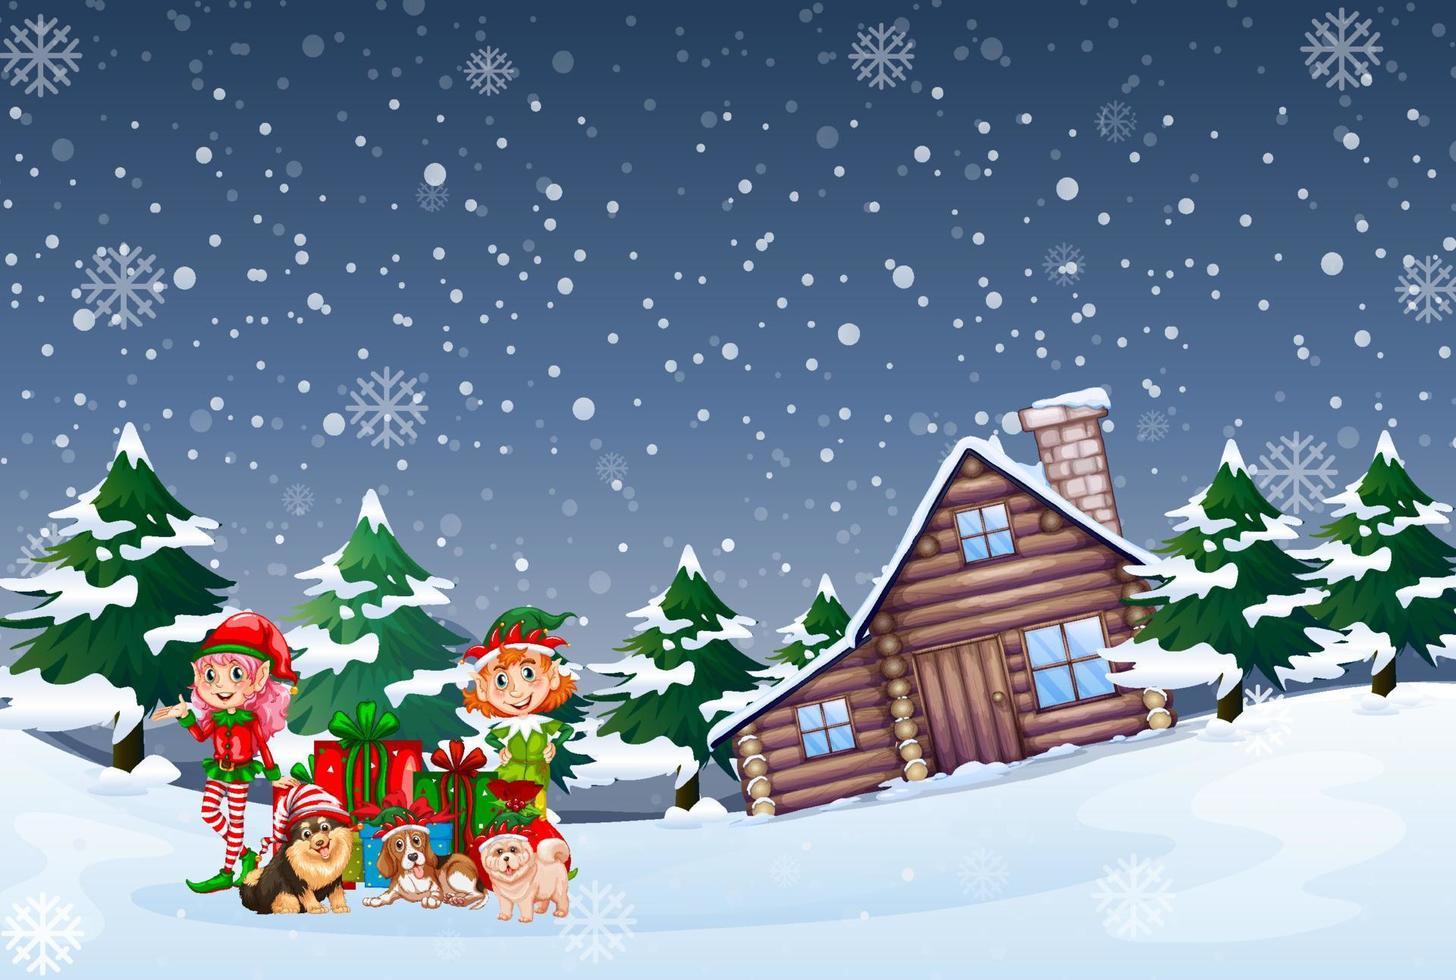 escena nocturna nevada con duende y perros en estilo de dibujos animados vector